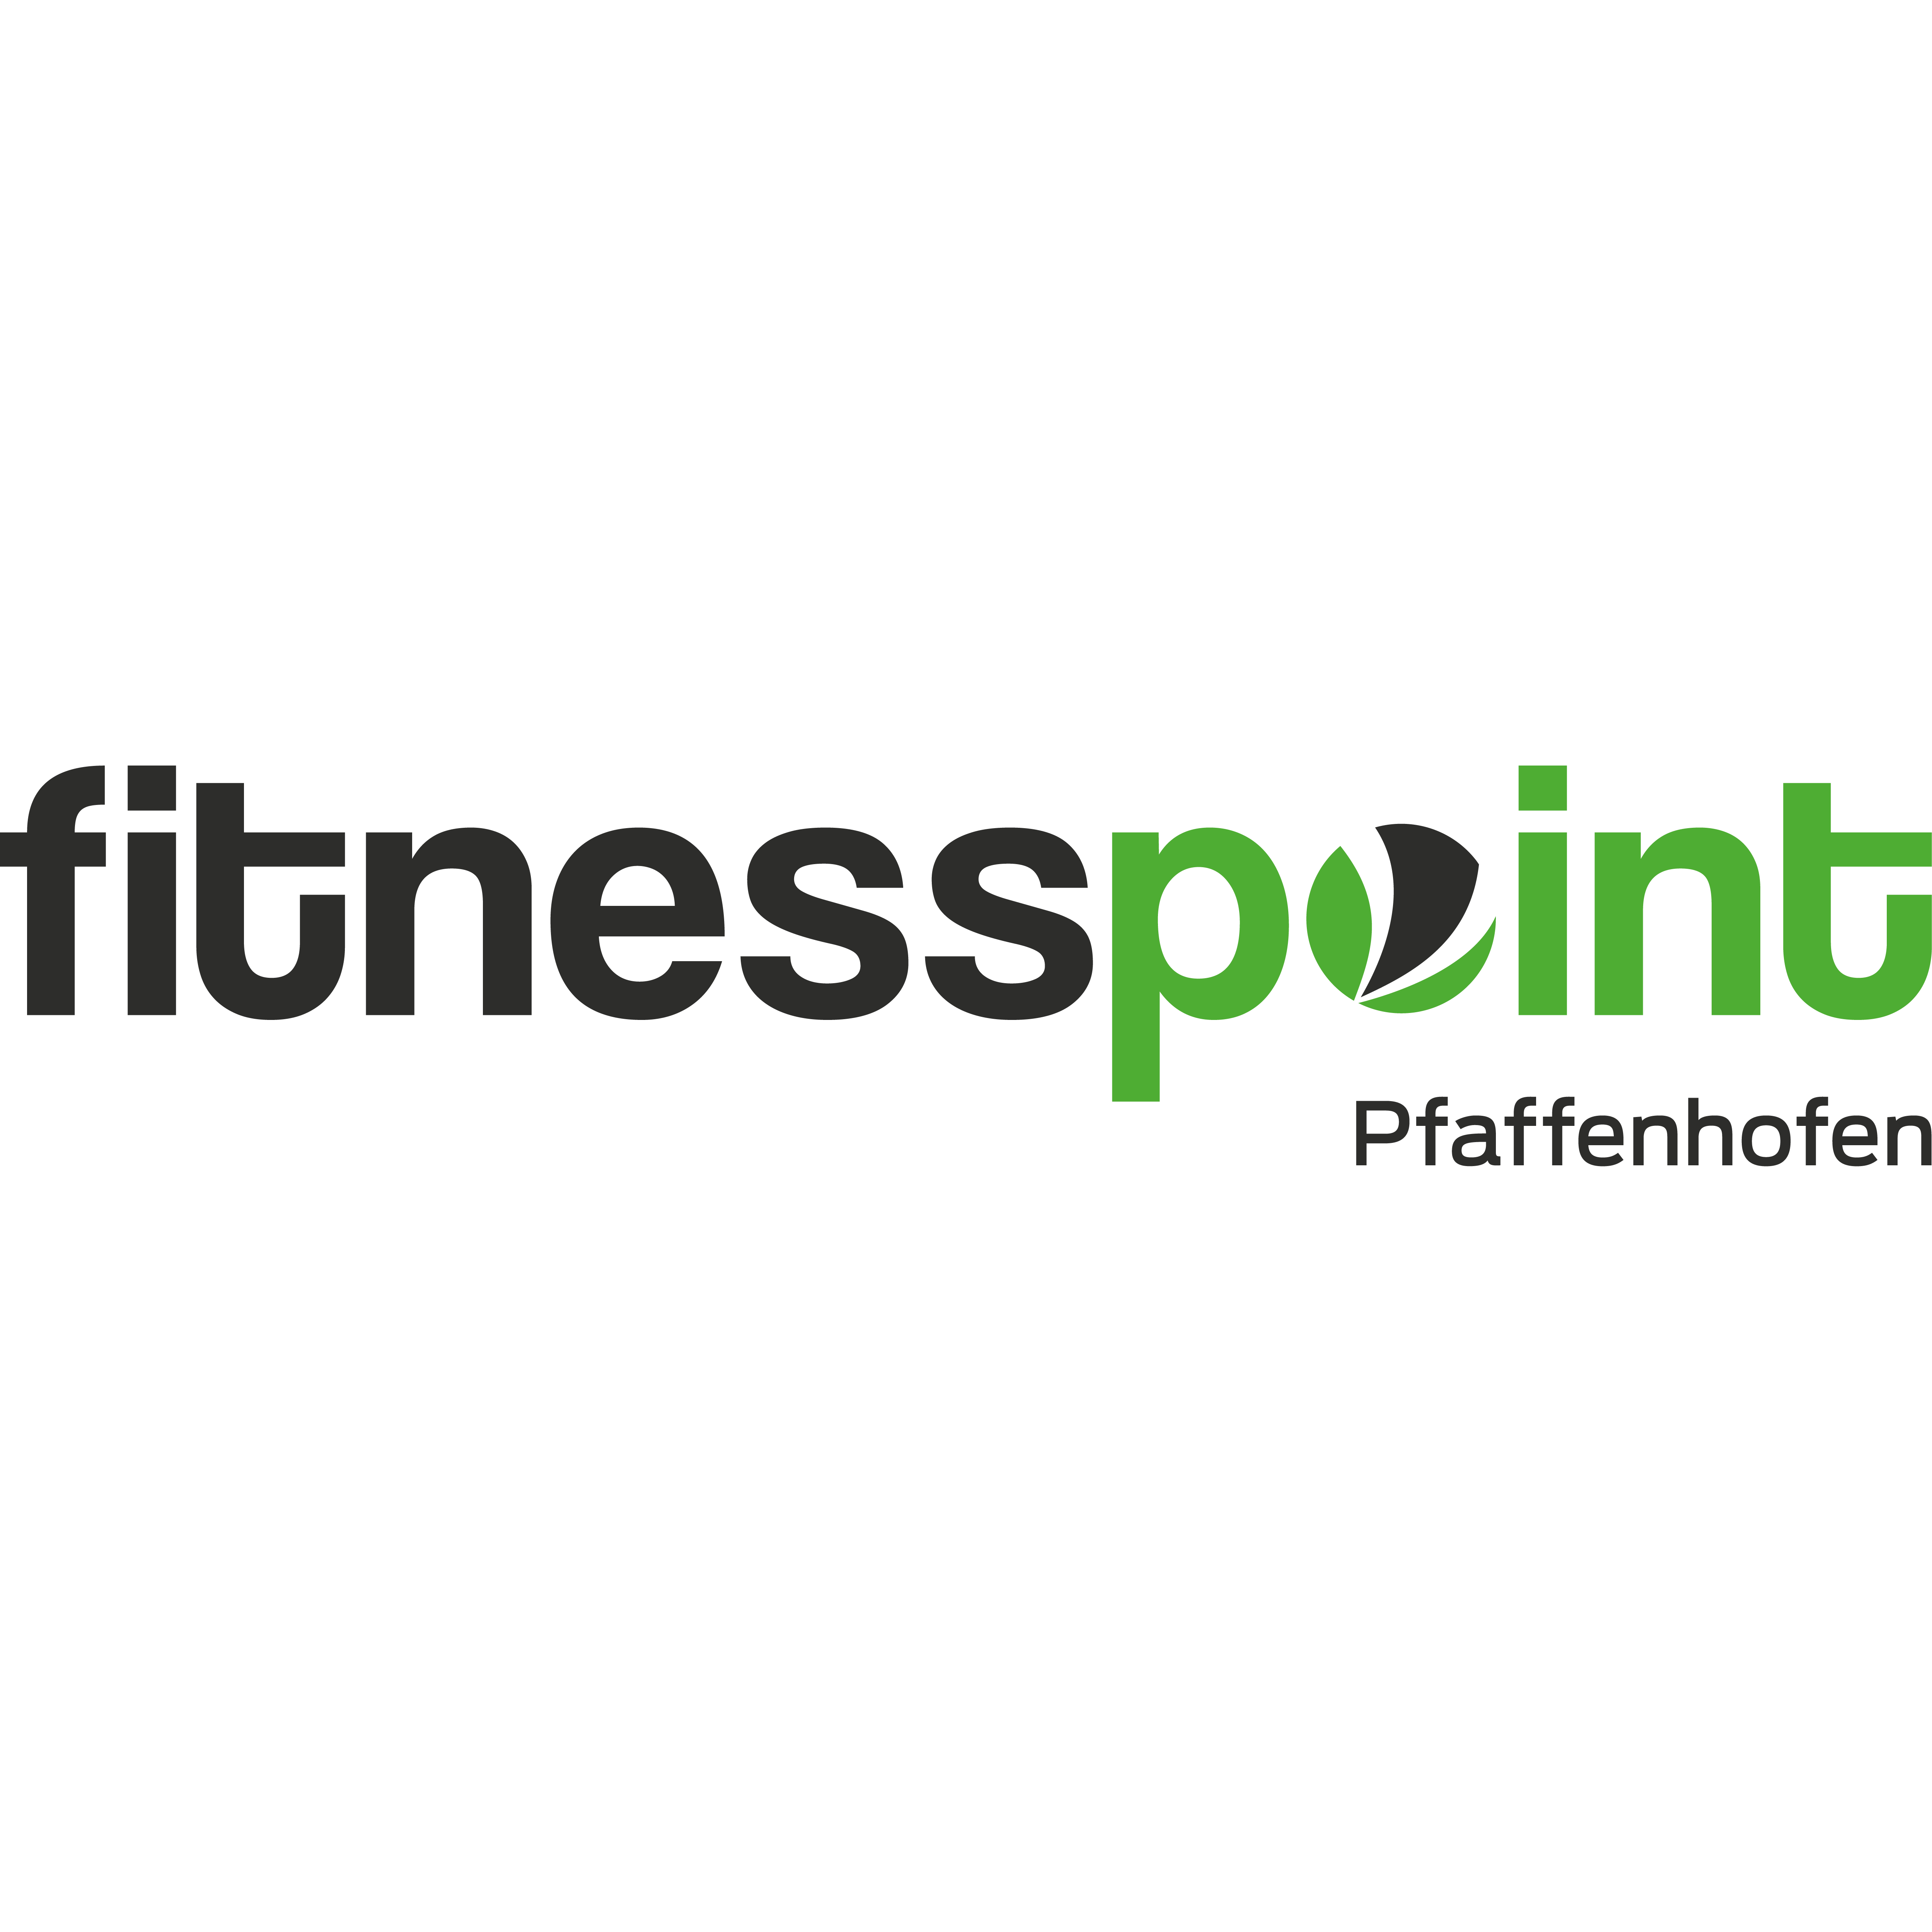 Fitnesspoint Pfaffenhofen  